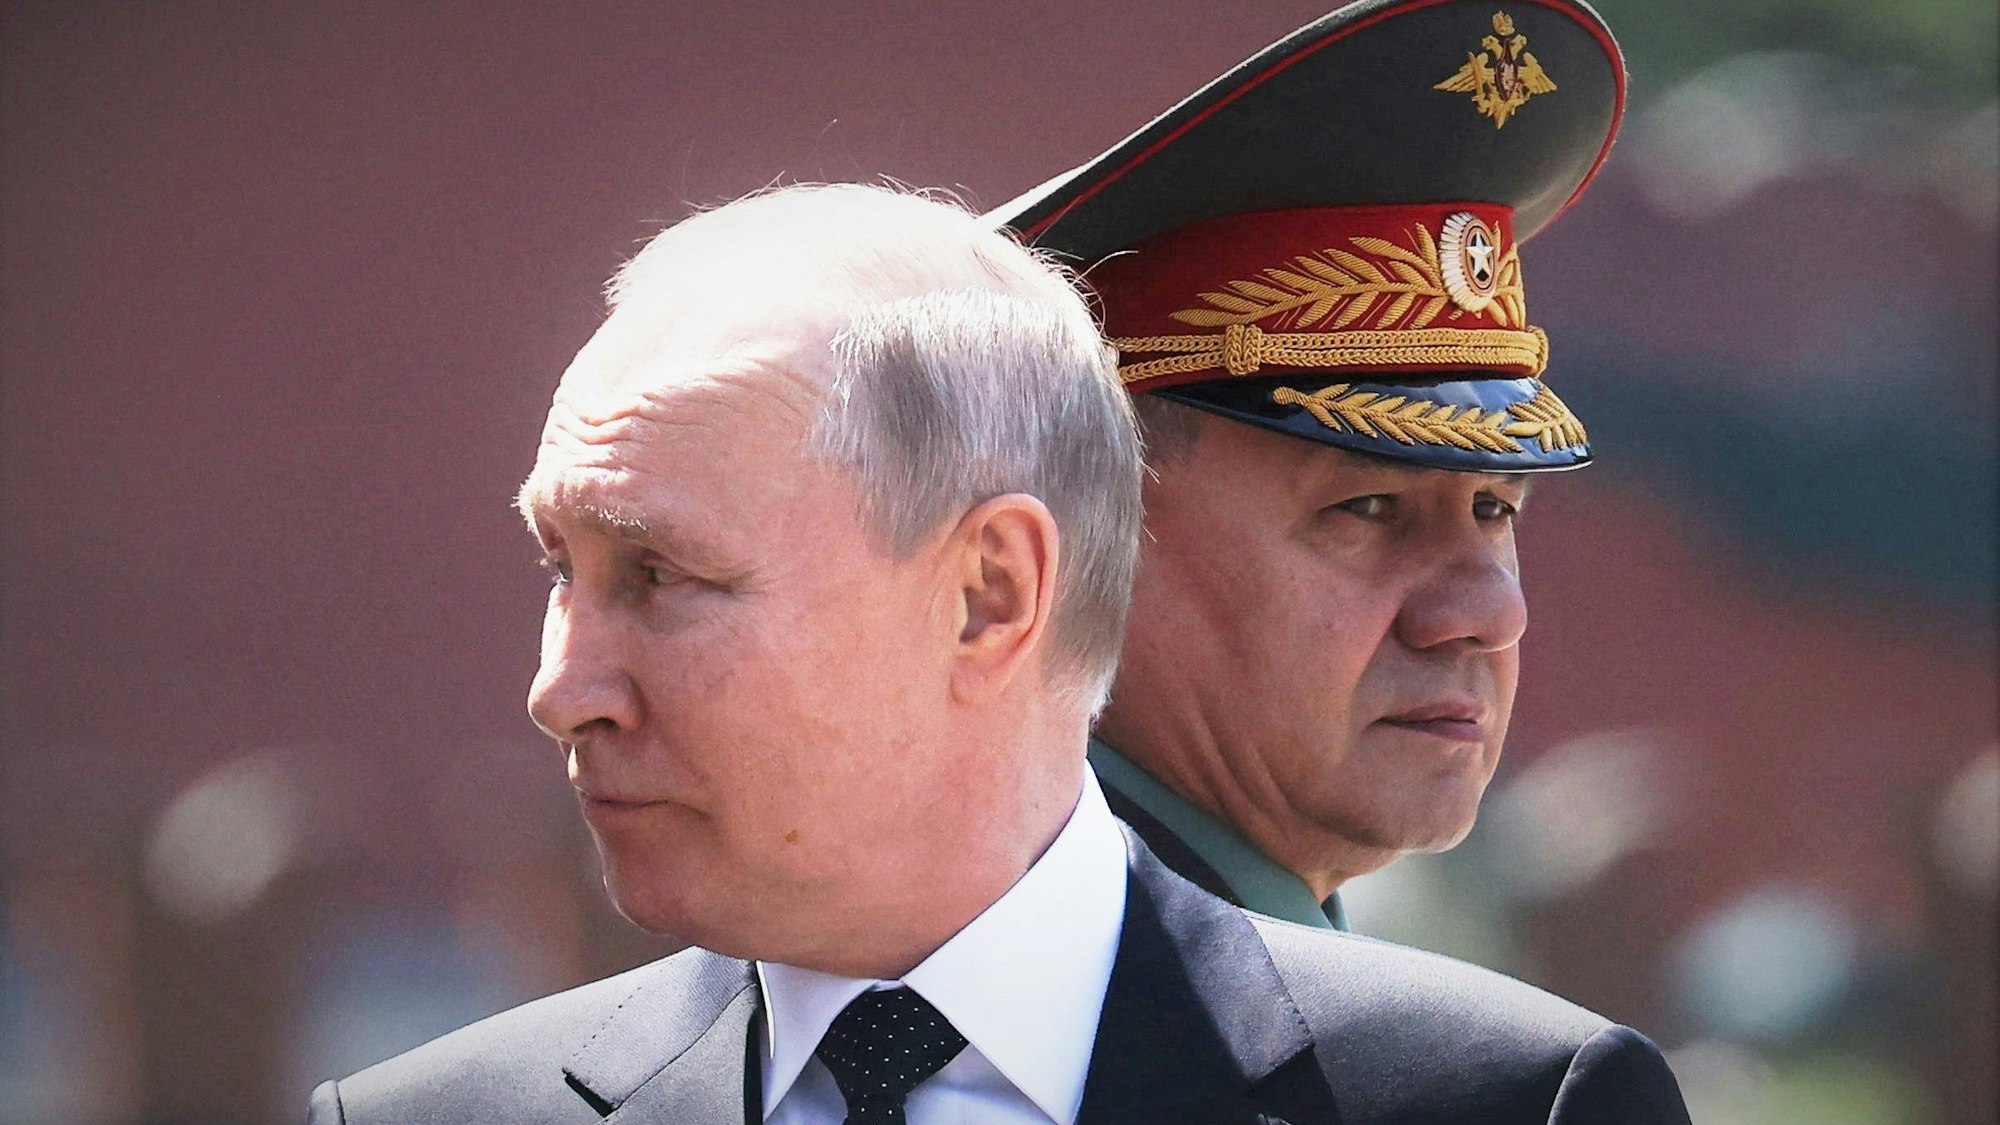 Der russische Präsident Wladimir Putin (v.) und sein Verteidigungsminister Sergei Schoigu beim „Tag des Sieges“ im Juni in Moskau. Schoigus Reaktion auf eine Interviewfrage sorgt nun für Wirbel.